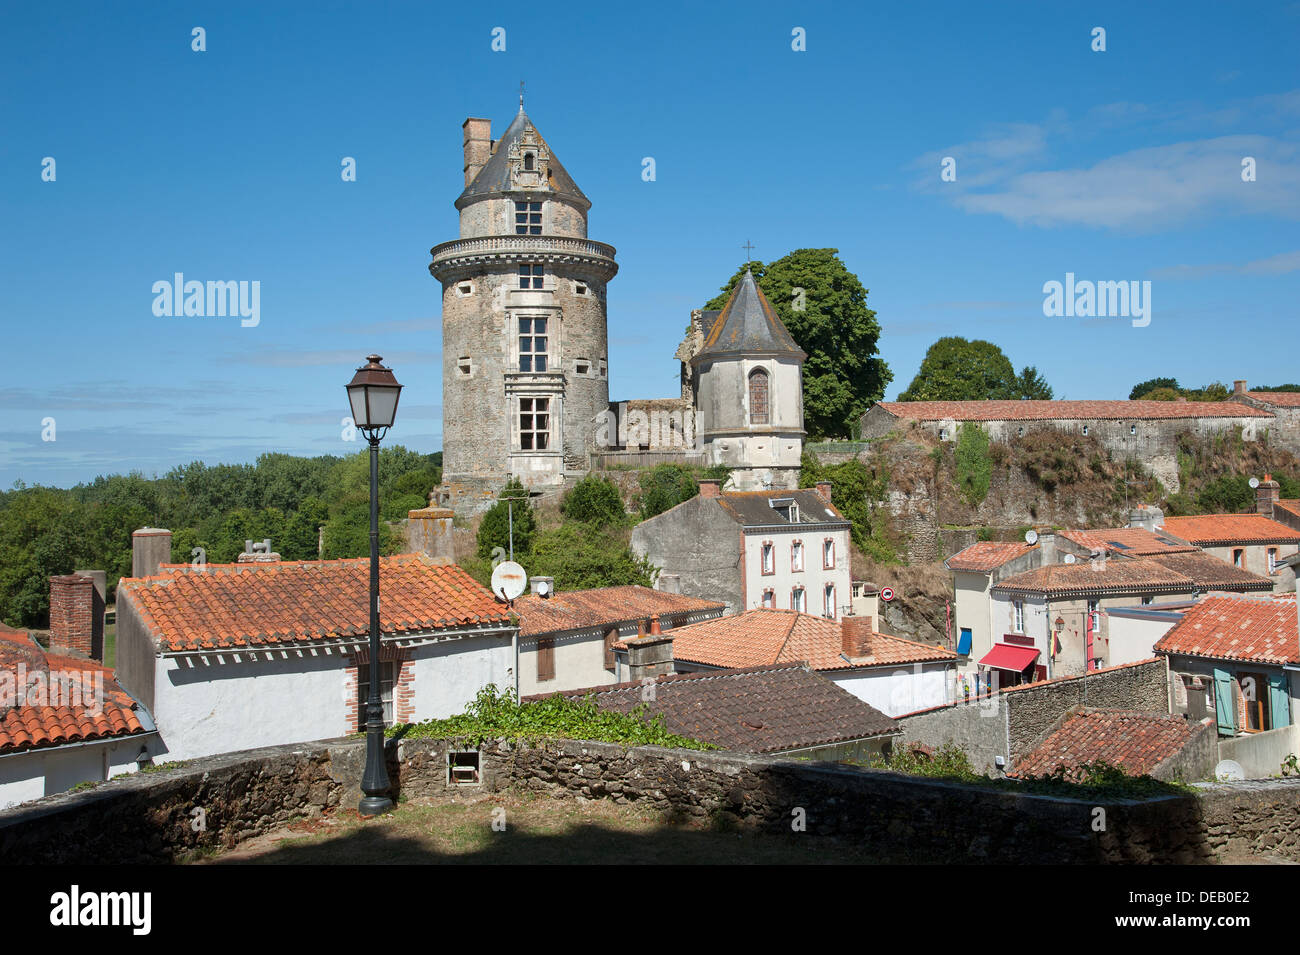 Frankreich-Touristenattraktion Chateau Apremont in der Vendee Region Frankreich Stockfoto